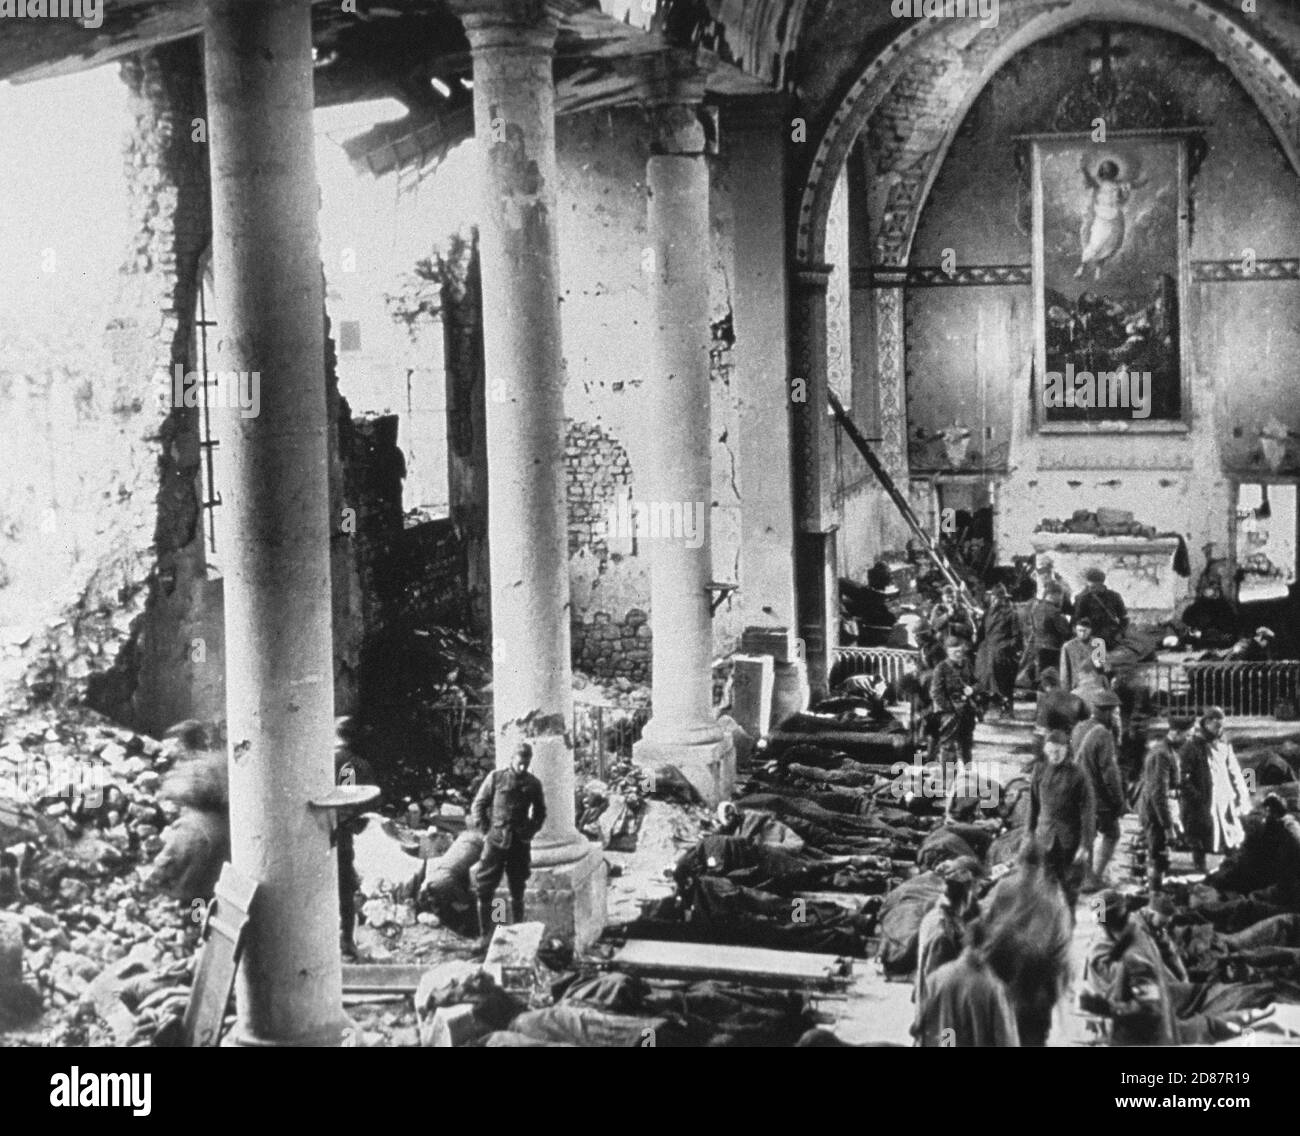 Station de premiers secours dans l'église bombardée, France, US Army signal corps, 1918 Banque D'Images